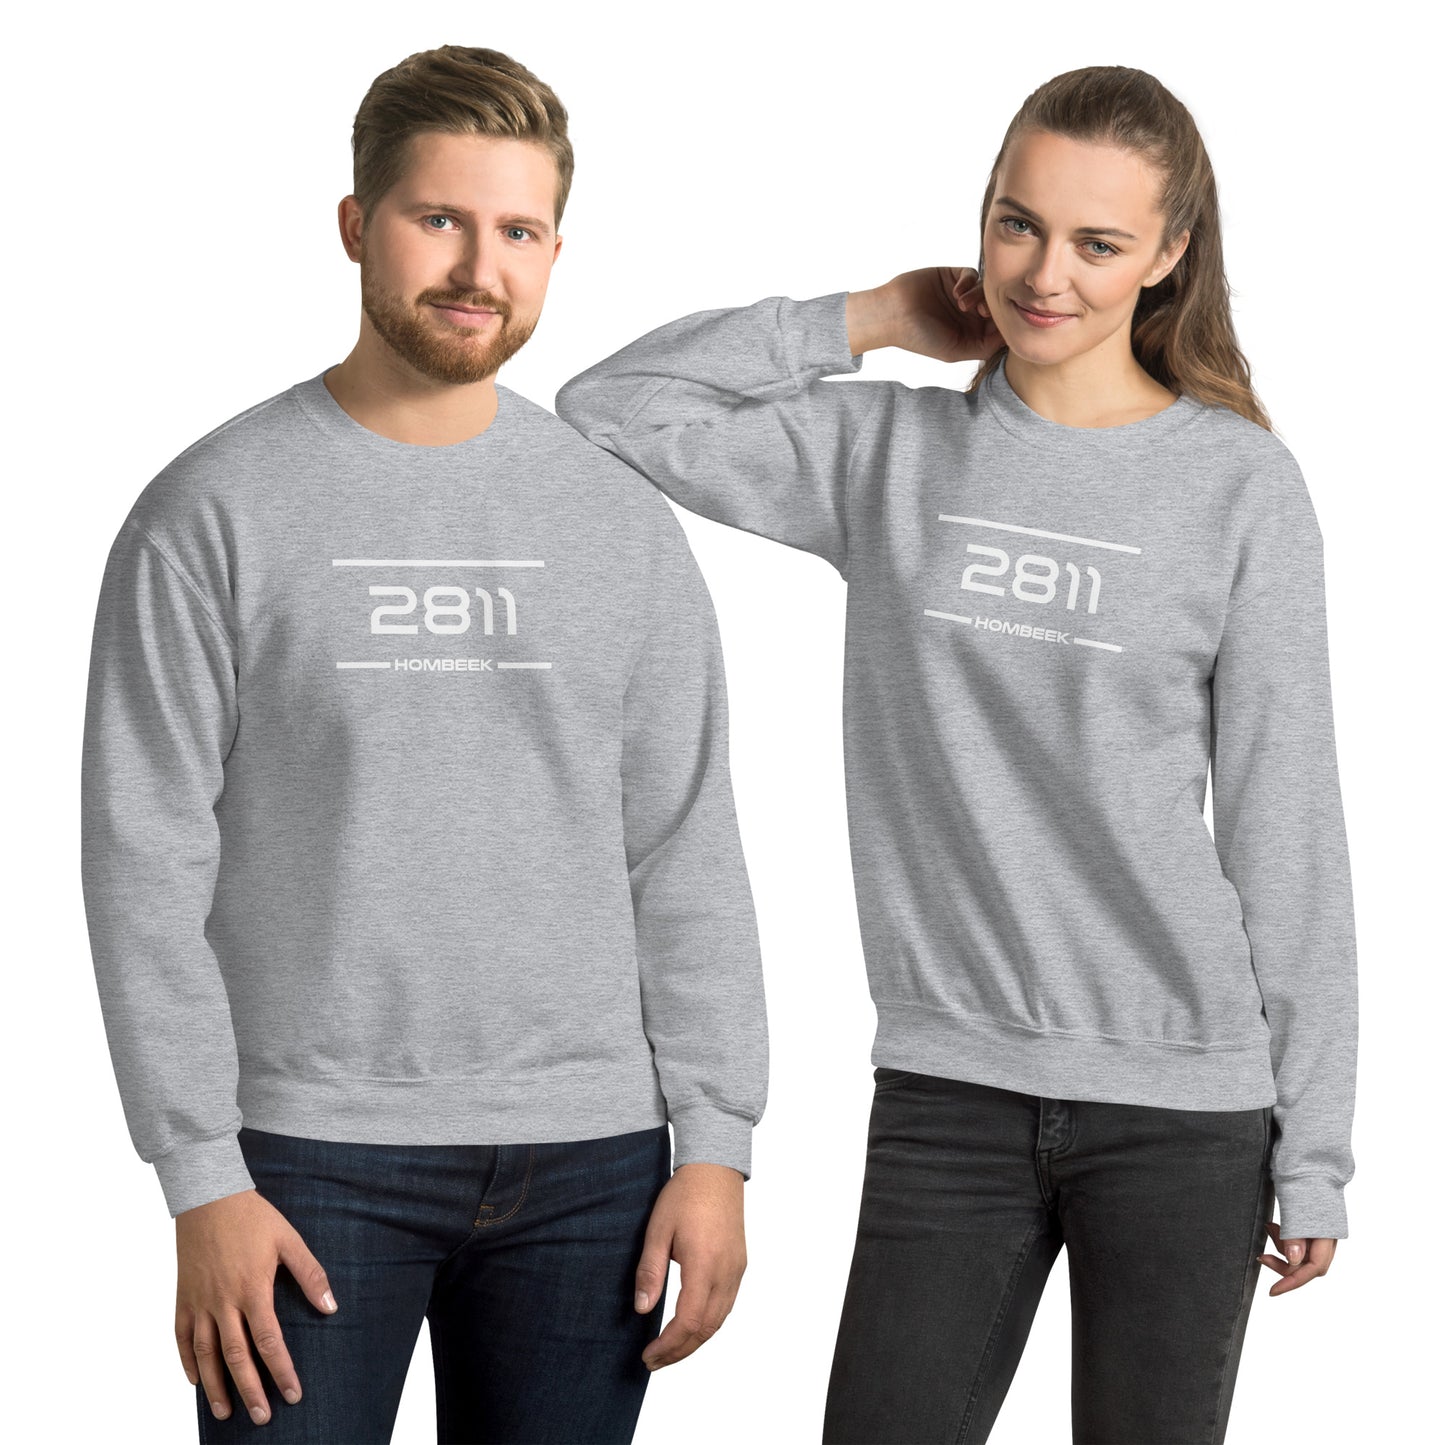 Sweater - 2811 - Hombeek (M/V)